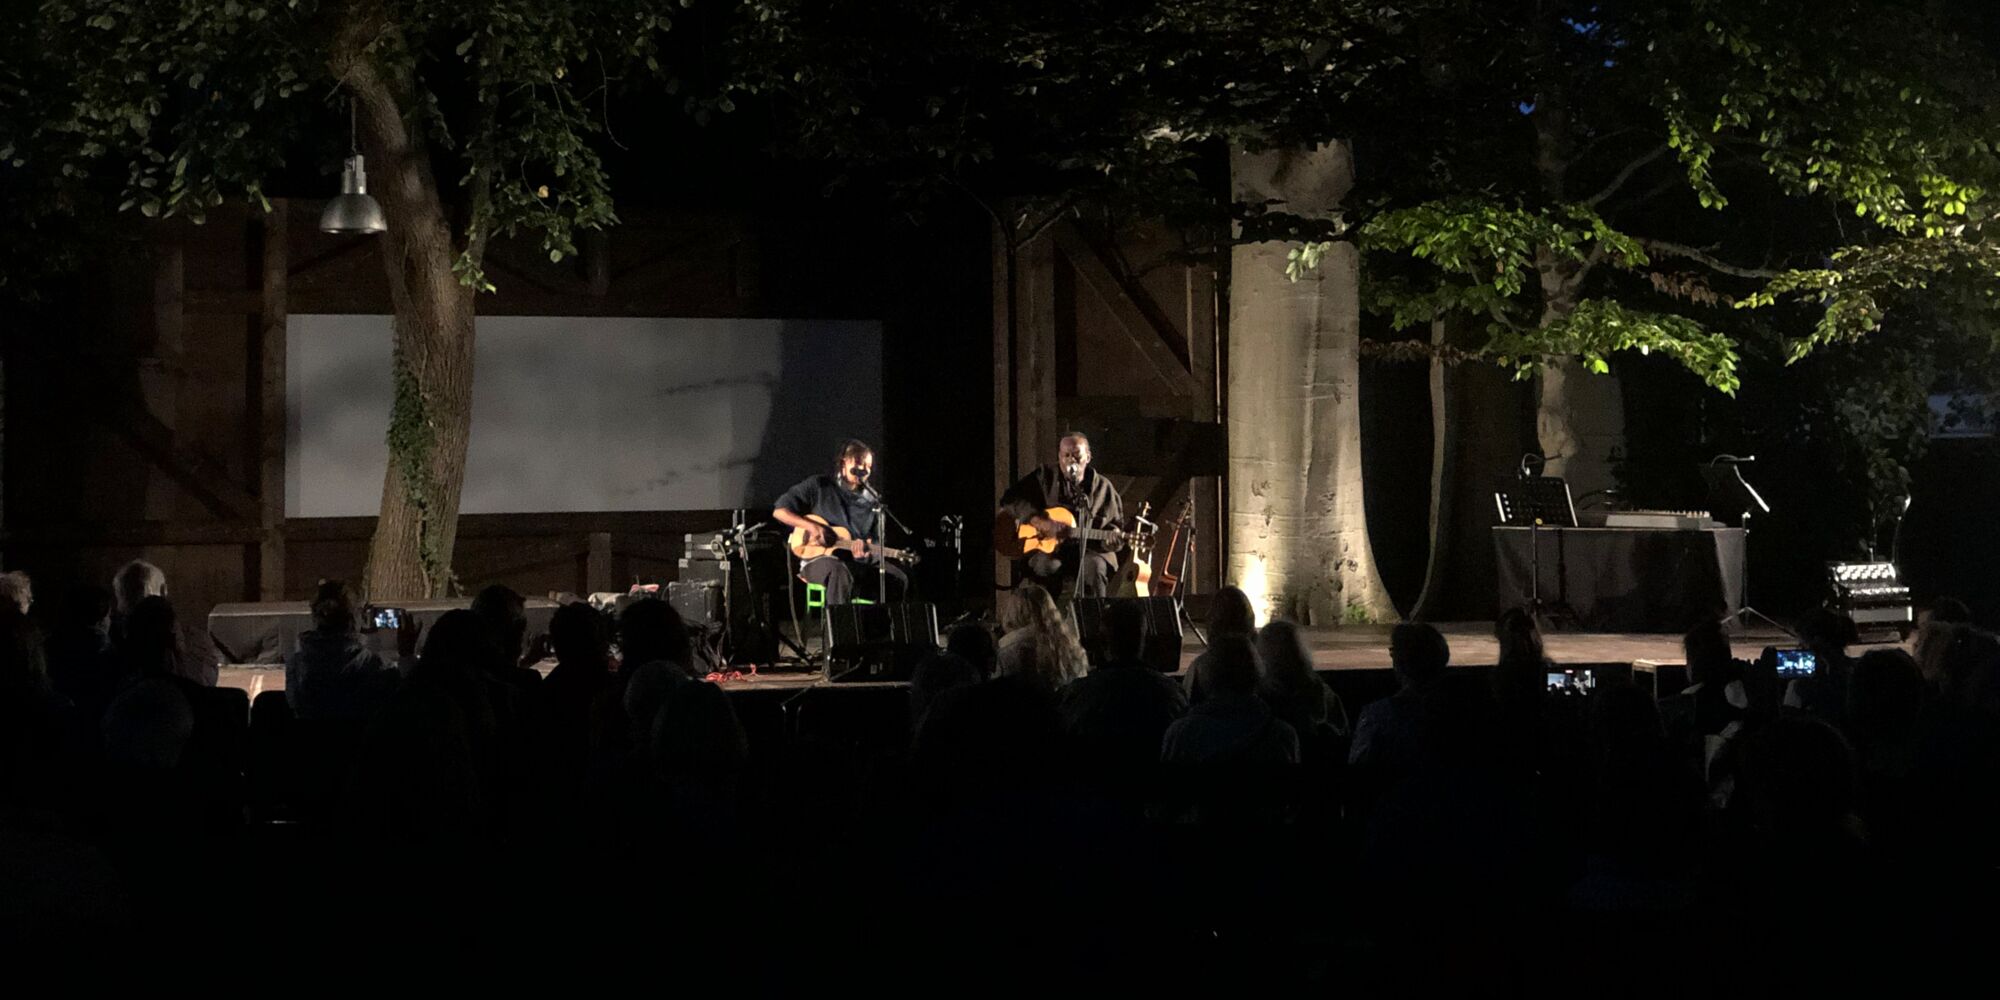 Hier sieht man Wally und Ami Warning auf der Freilichtbühne der Mohr-Villa Freimann am Abend. Sie haben jeweils eine Gitarre und ein Mikrofon vor sich. Im Vordergrund ist das Publikum zu erkennen. Auf der Bühne stehen zwei große Bäume.